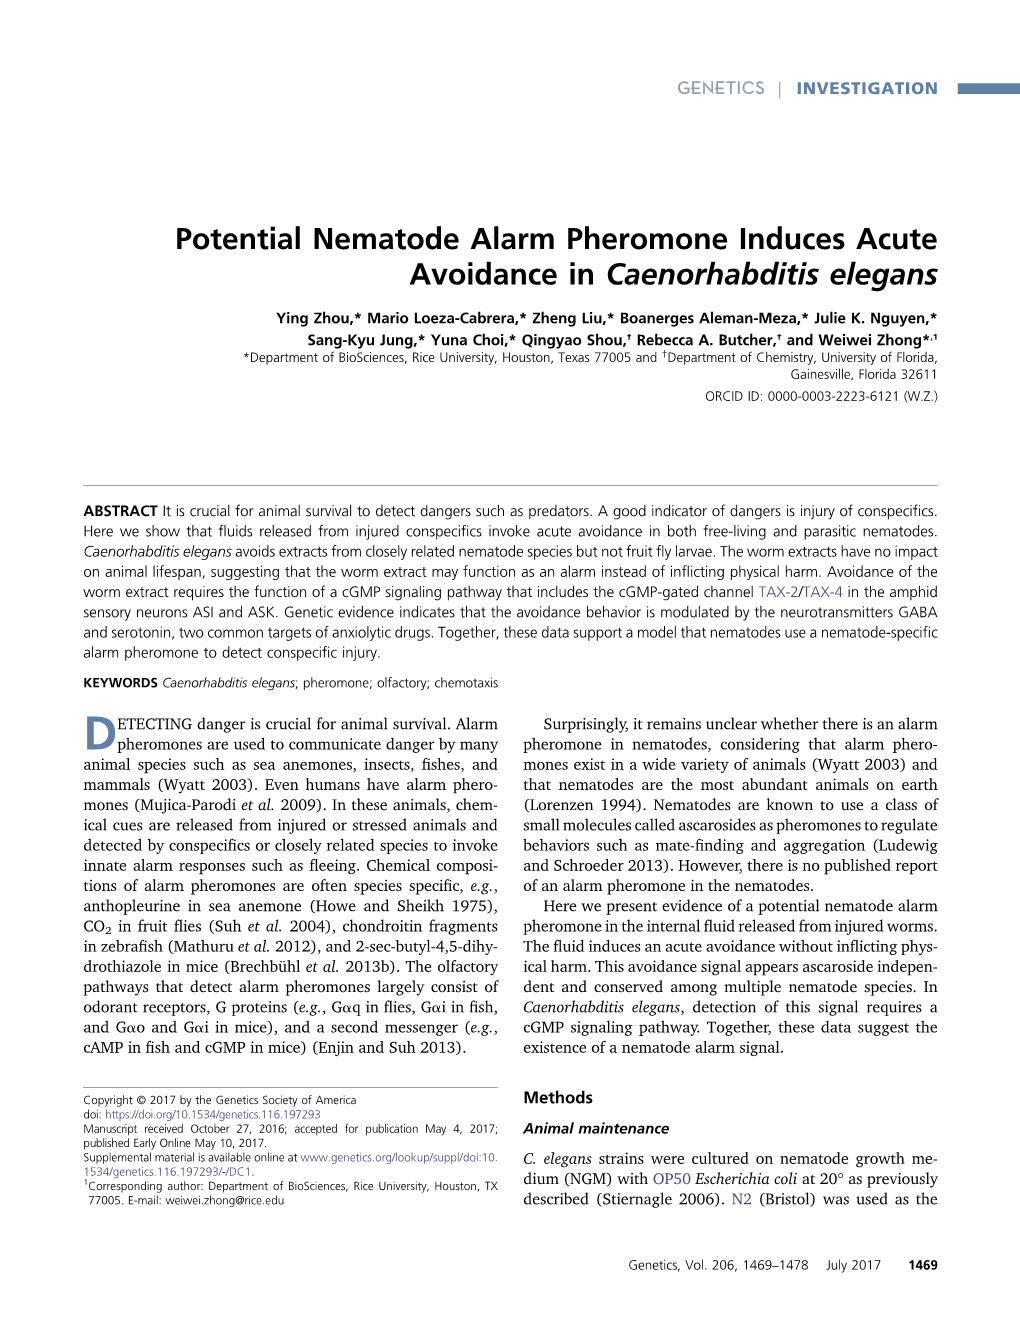 Potential Nematode Alarm Pheromone Induces Acute Avoidance in Caenorhabditis Elegans